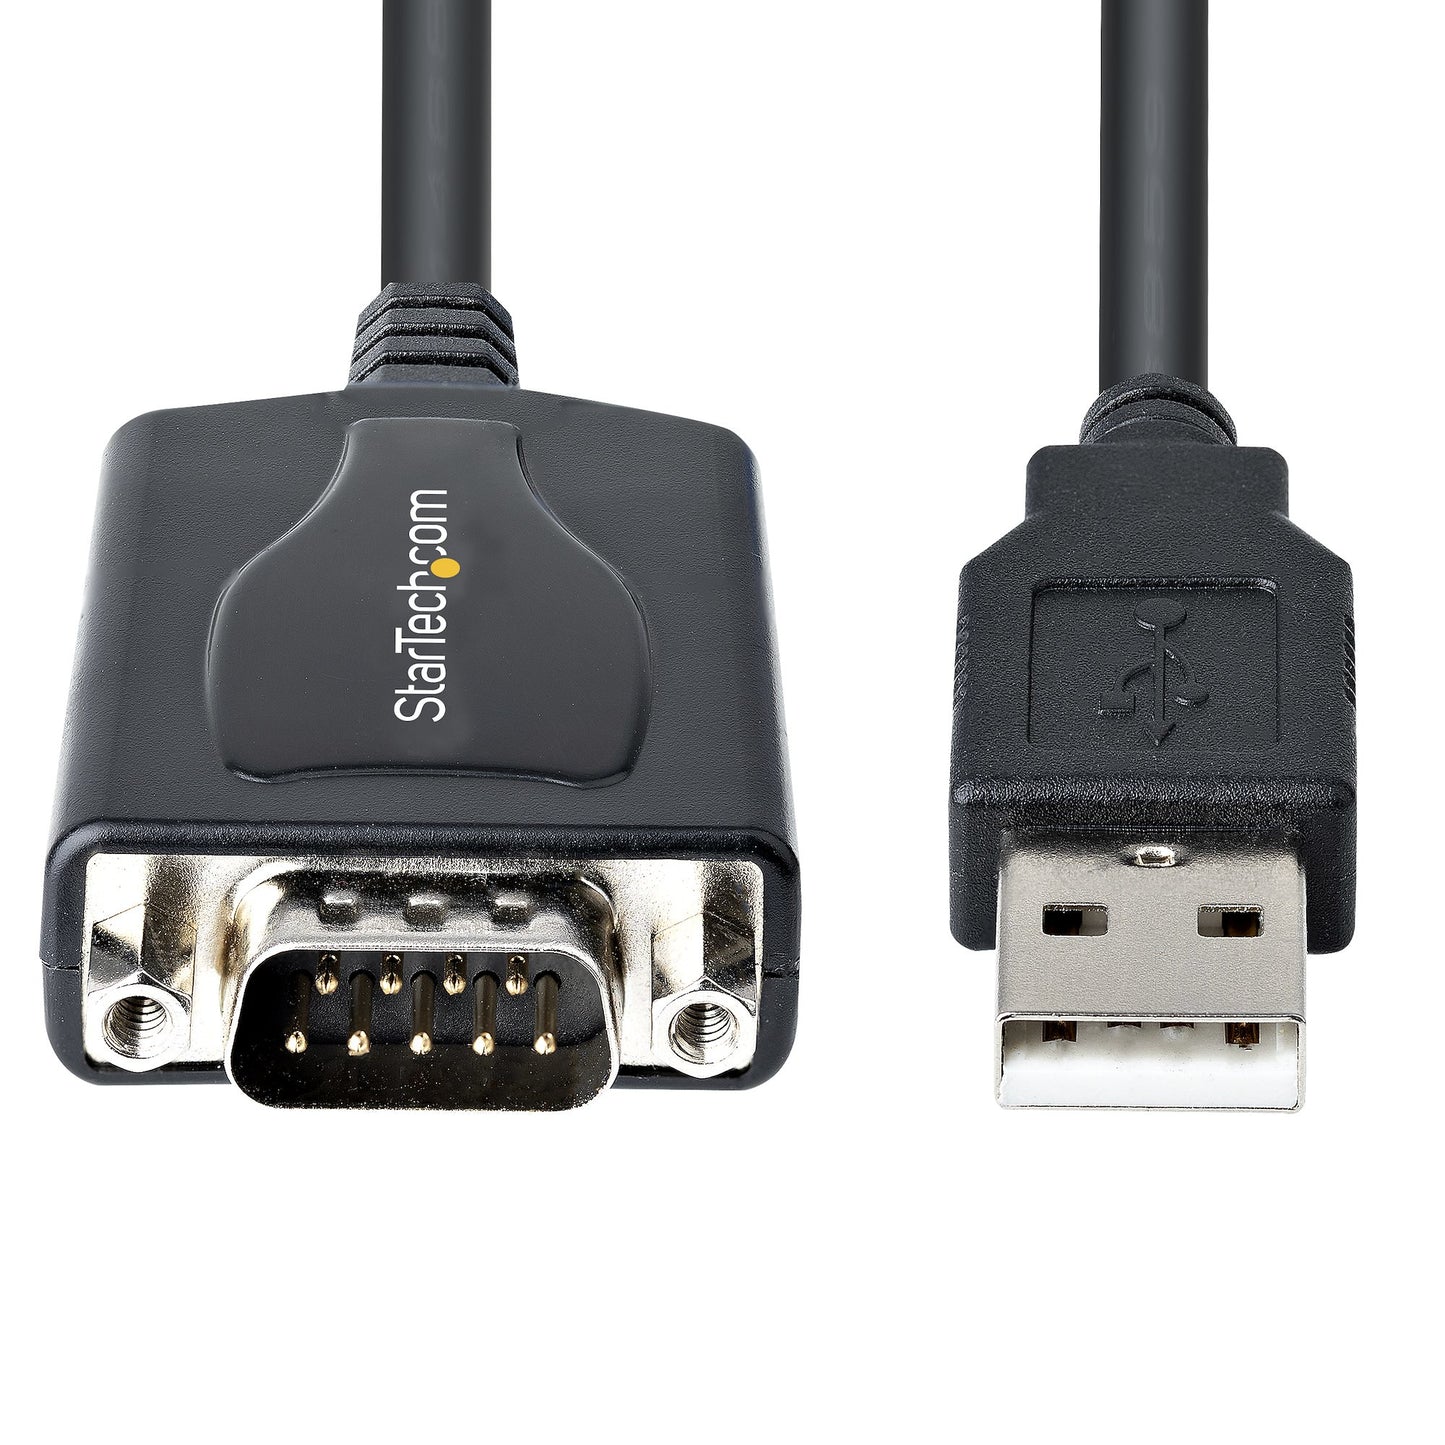 Cable StarTech.com 1P3FPC-USB-SERIAL, DB-9 Macho - USB A 2.0 Macho, 90cm, Negro